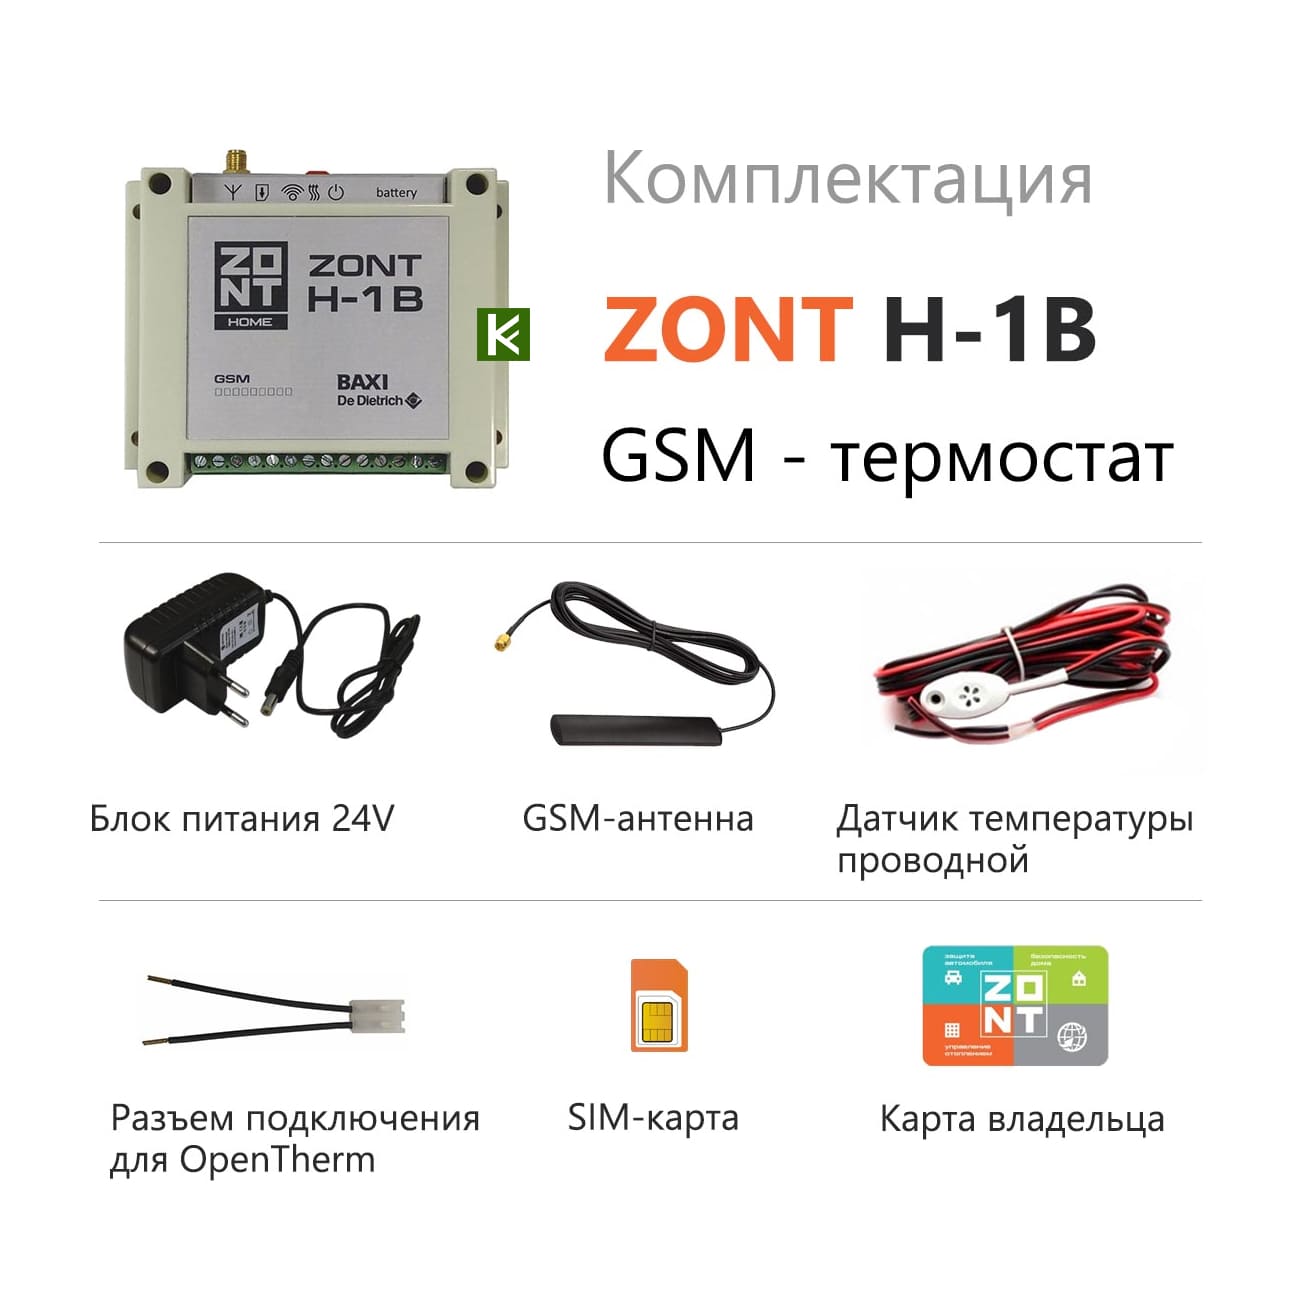 Zont котел baxi. Zont h-1v Baxi OPENTHERM. GSM Zont h-1v. Система удаленного управления котлом Zont-h1b Baxi. Zont h-1 контроллер.